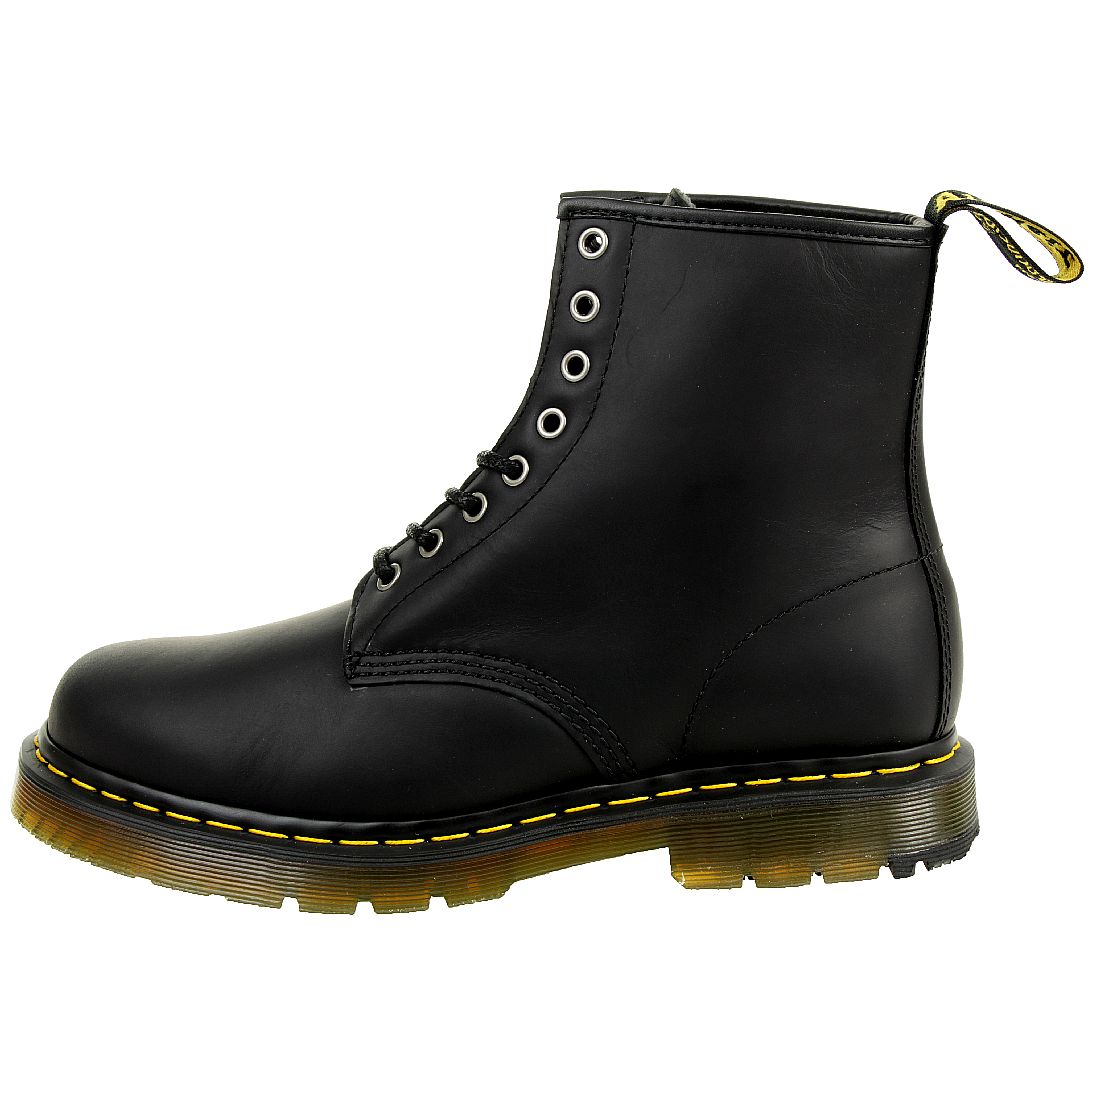 Dr. Martens 1460 Snowplow Black Unisex Stiefel Boots schwarz 24039001